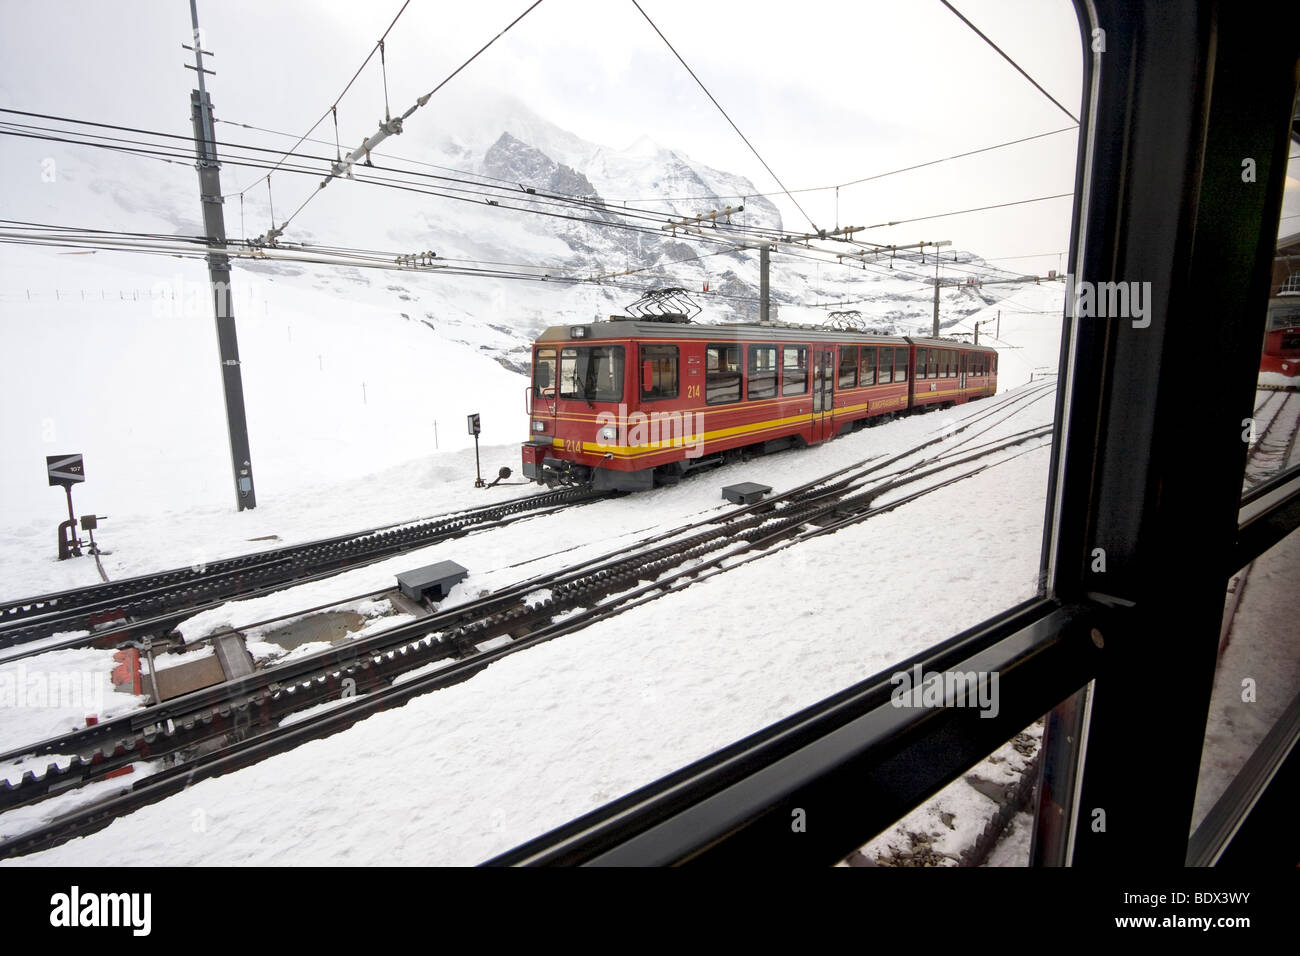 La estación de tren en Kleine Scheidegg que se conecta a un ferrocarril de cremallera que cruza las montañas Eiger en su camino a Jungfraujoch Foto de stock